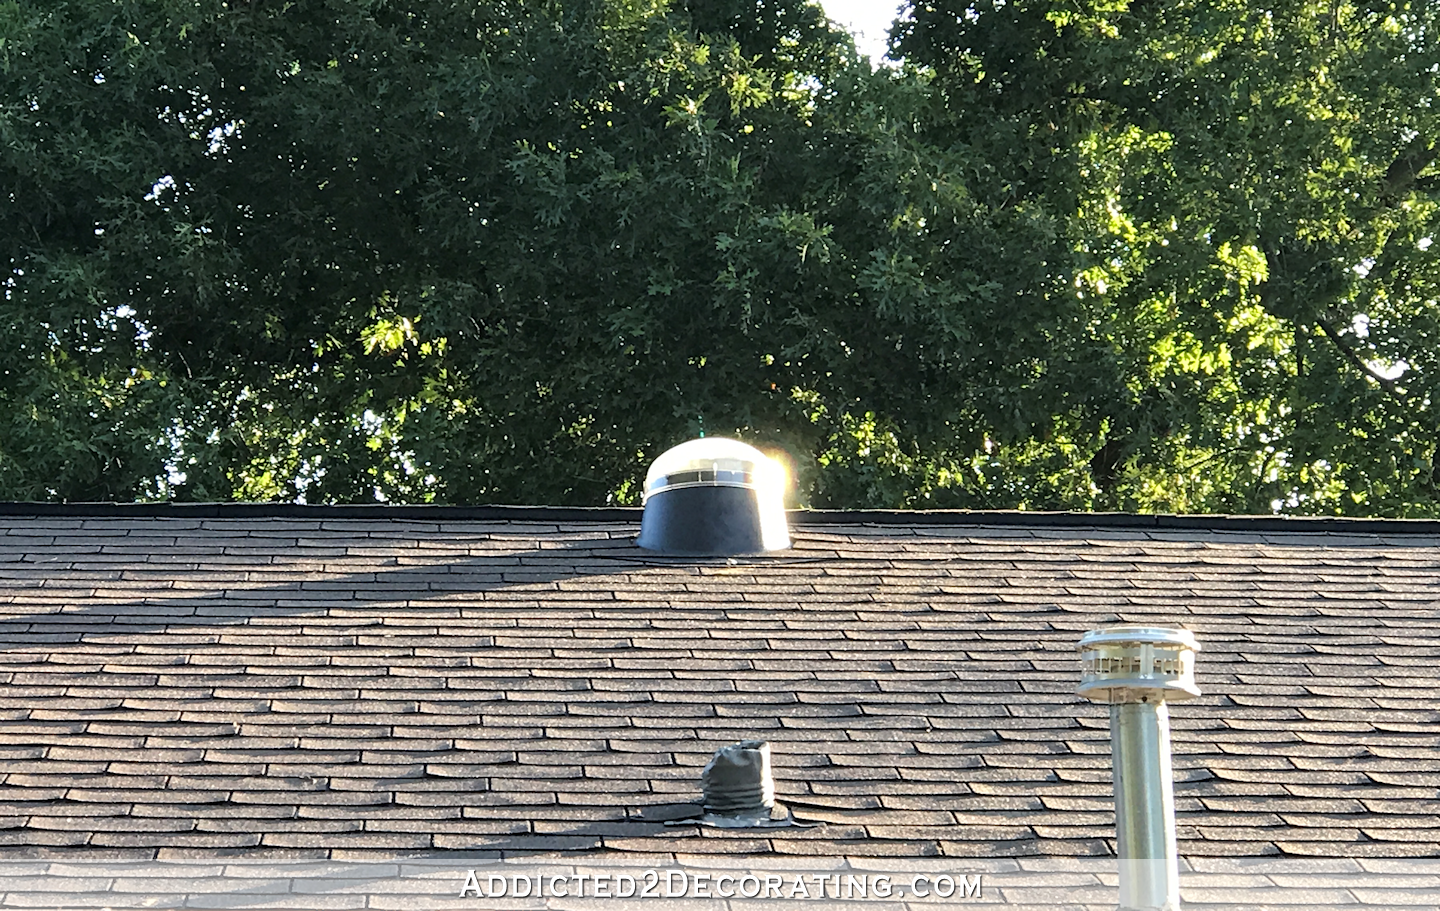 А потом на крыше есть маленький купол